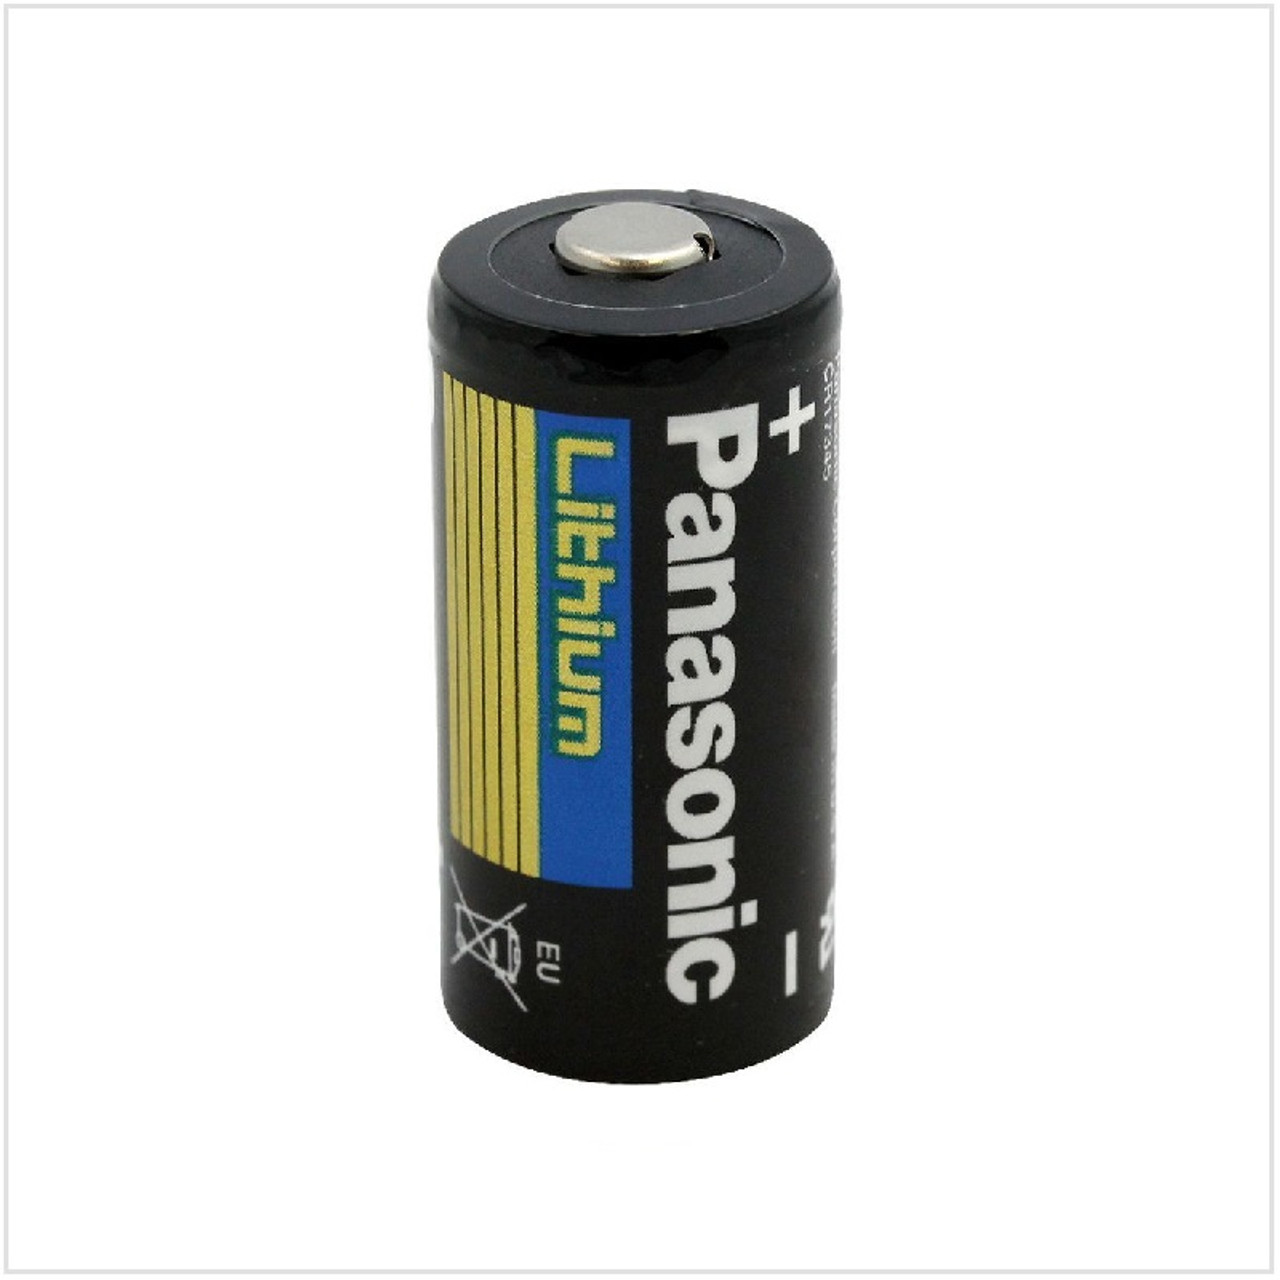 Panasonic CR123 Lithium Battery (3V) — Glazer's Camera